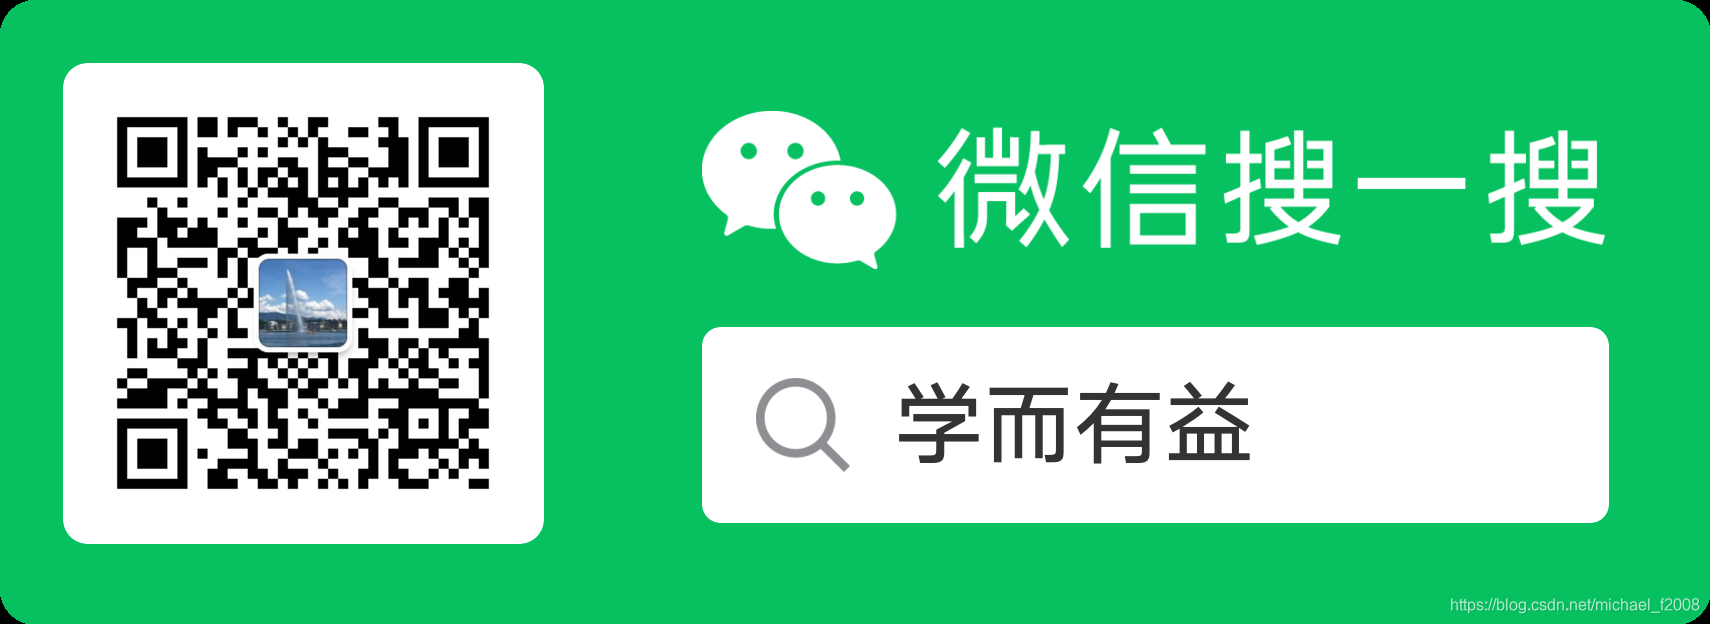 WeChatパブリックアカウント